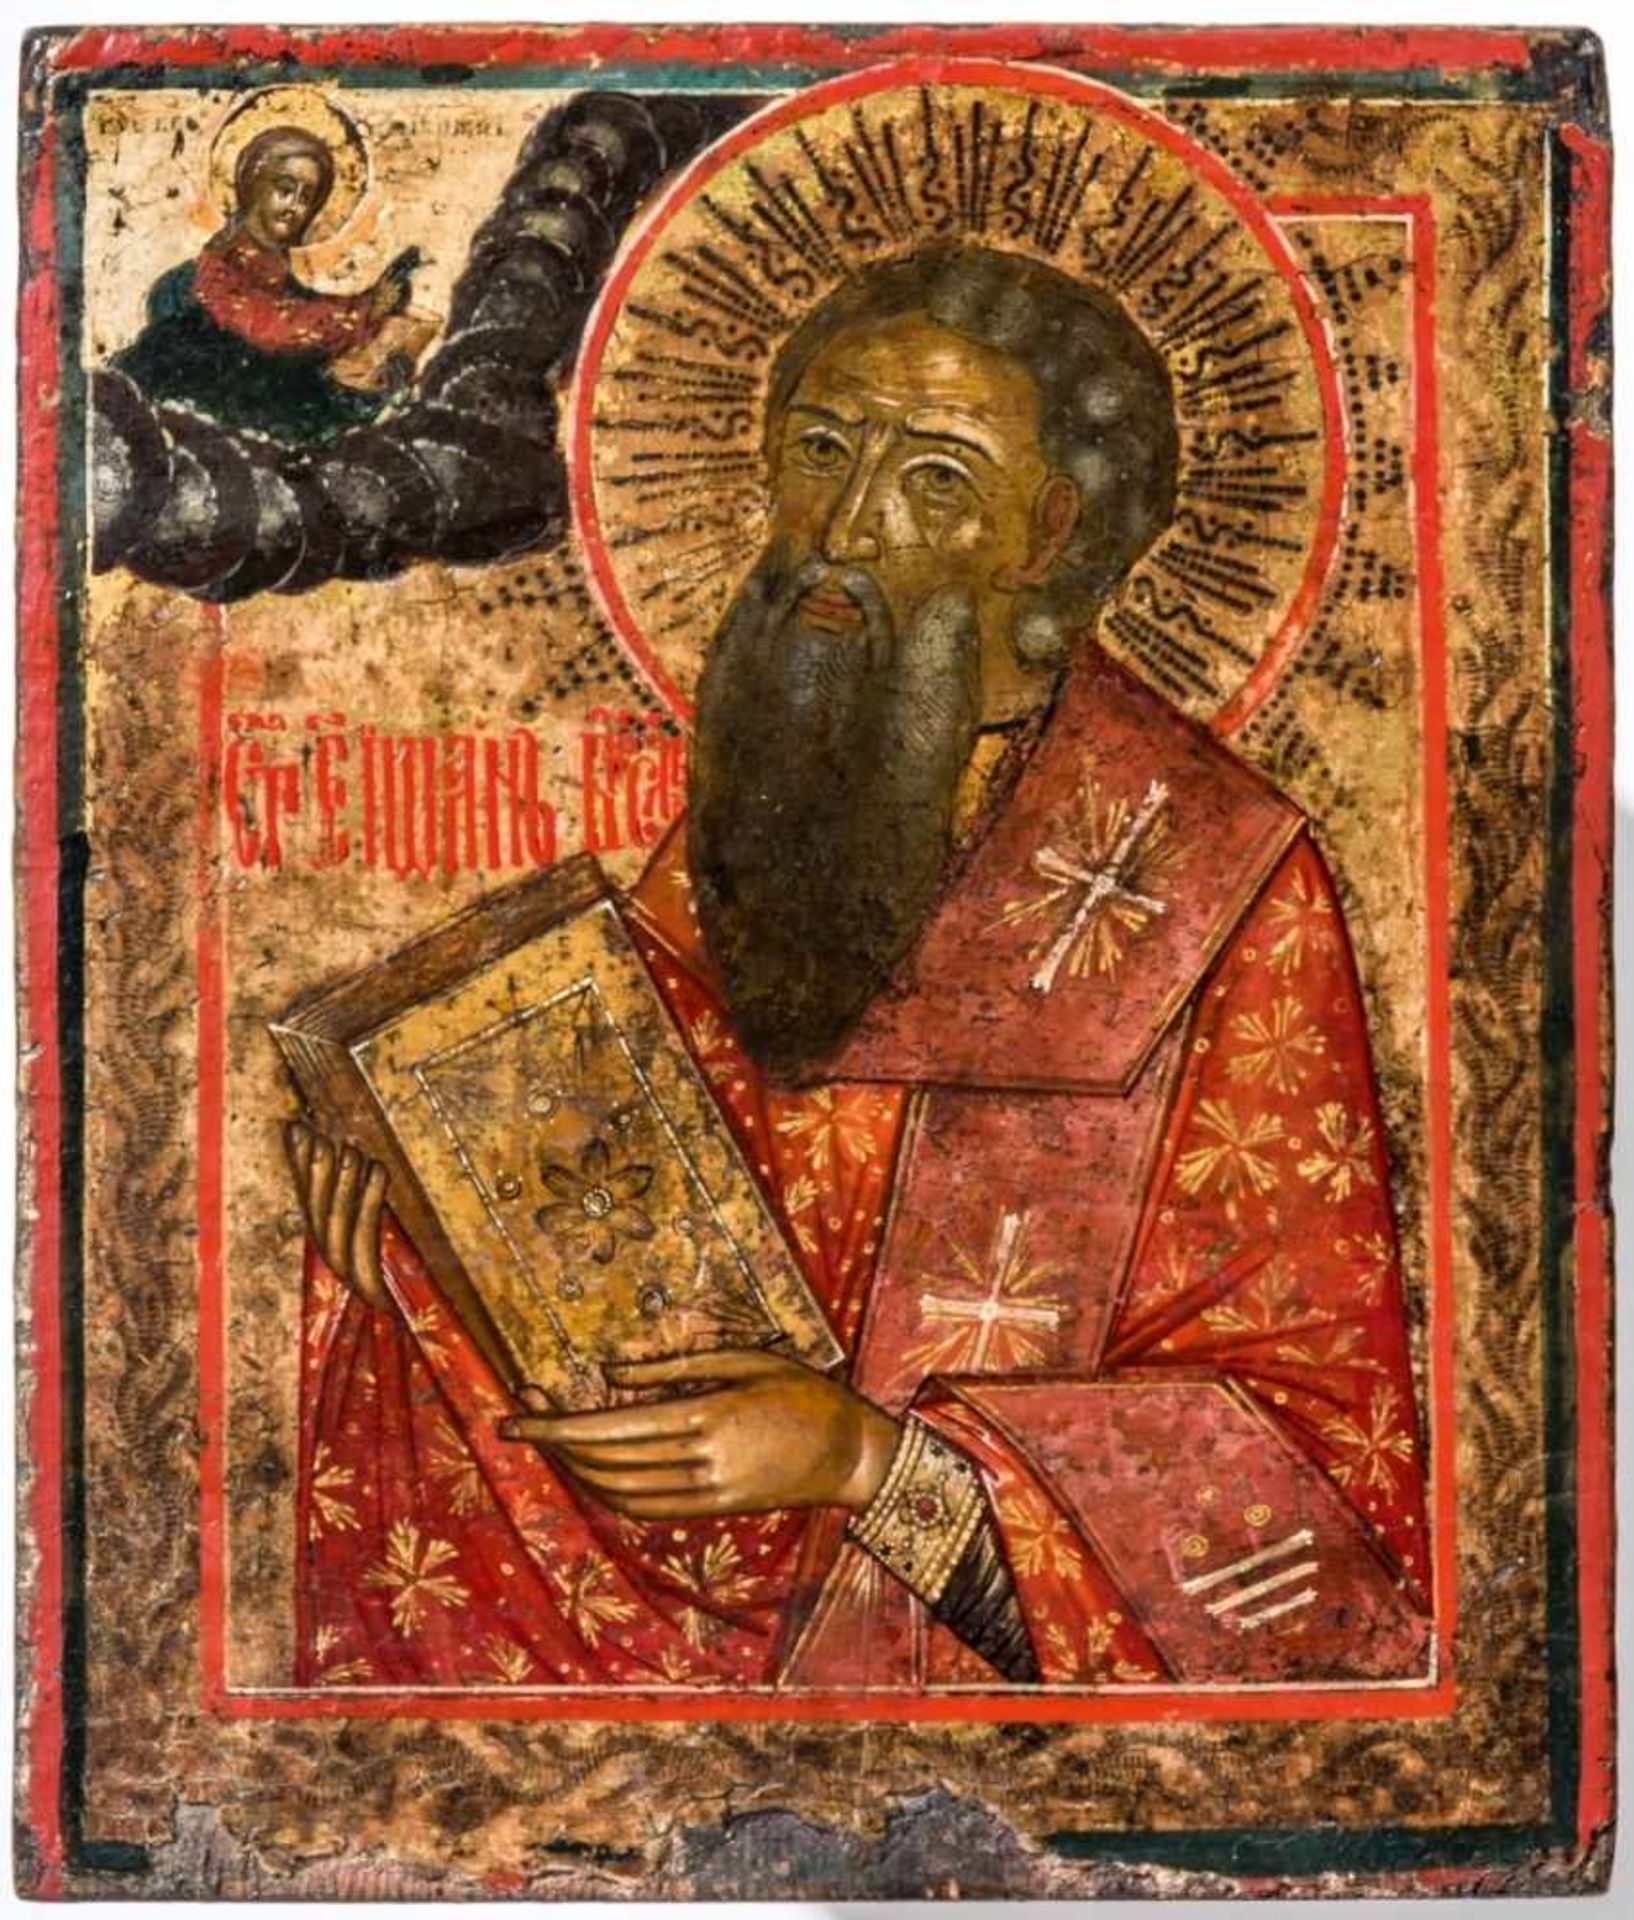 Hl. Evangelist Johannes Russische Ikone, Vetka, kurz nach 1800 17,8 x 15,2 cmSt. John the